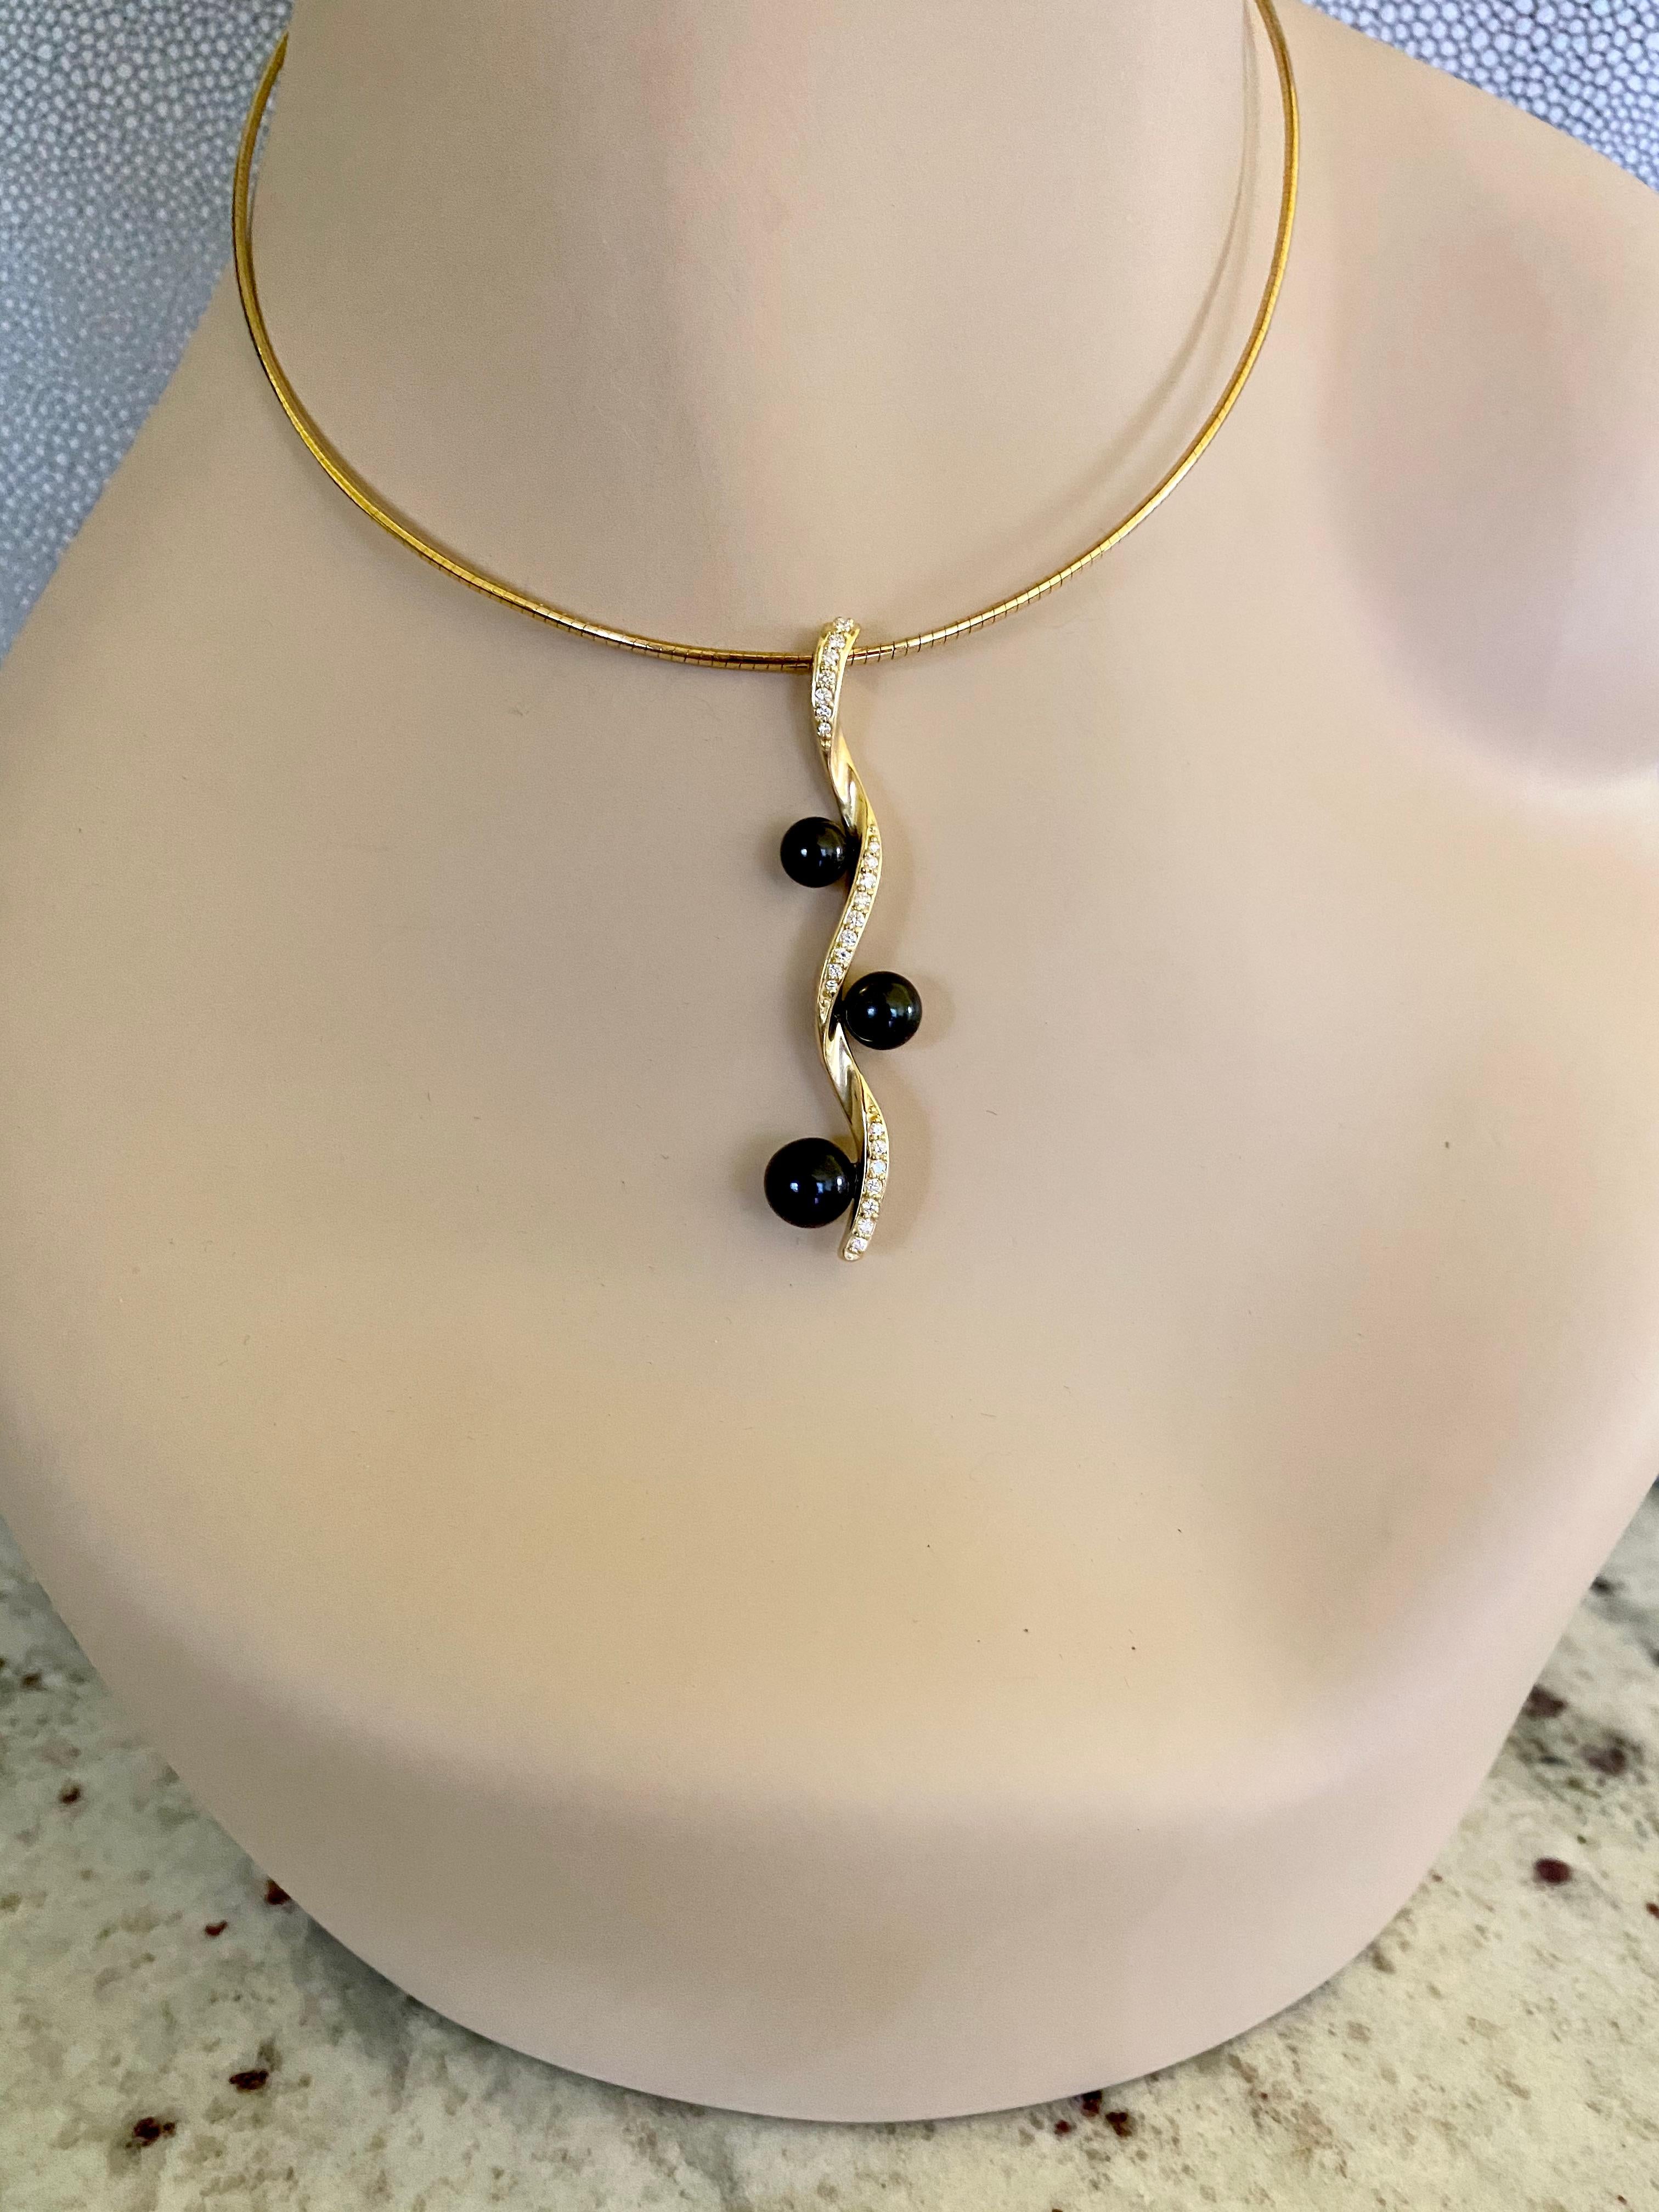 Schwarze Akoya-Perlen (Herkunft: Japan) in abgestuften Größen sind in diesem einzigartigen Helix-Anhänger zu sehen.  Die Perlen sind von Edelsteinqualität und besitzen einen reichen Glanz.  Weiße Diamanten sind in die Kurven des gedrehten